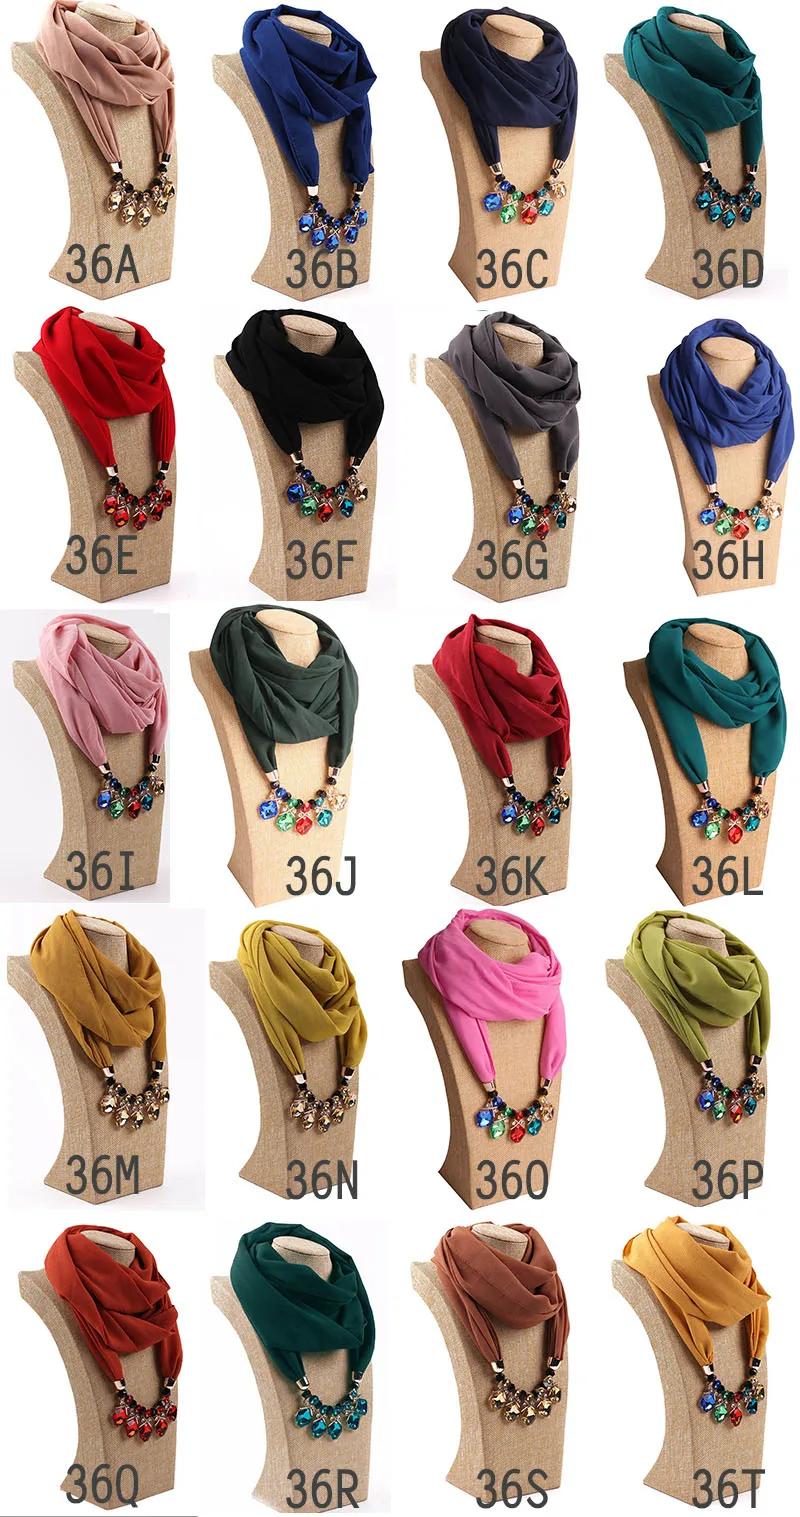 Смешанный 48 дизайн украшение для шарфа с подвеской женское ожерелье шарф хиджаб модный стиль бисер кисточкой Мягкий шарф, бесплатная